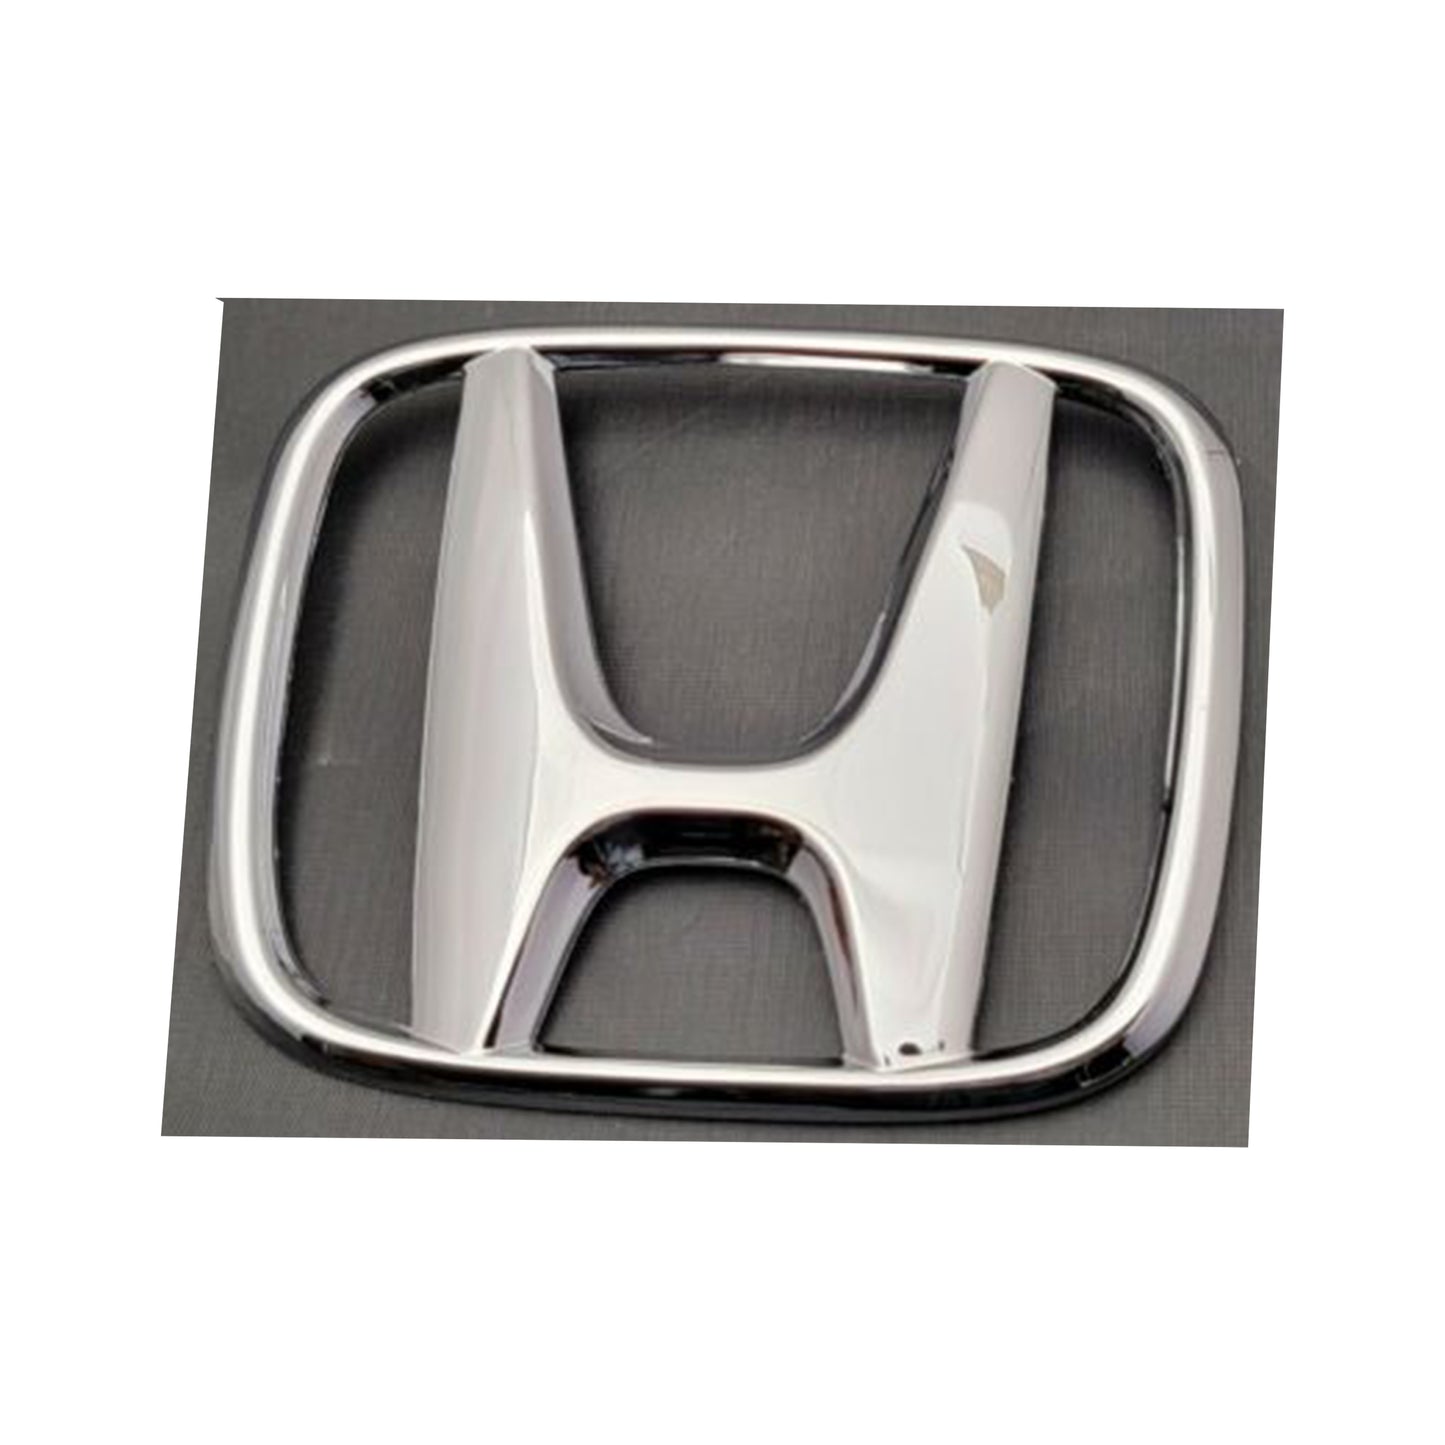 2008-2015 Honda Accord Front Emblem 75700-TA0-A00 Grille Logo 123*99mm-E01